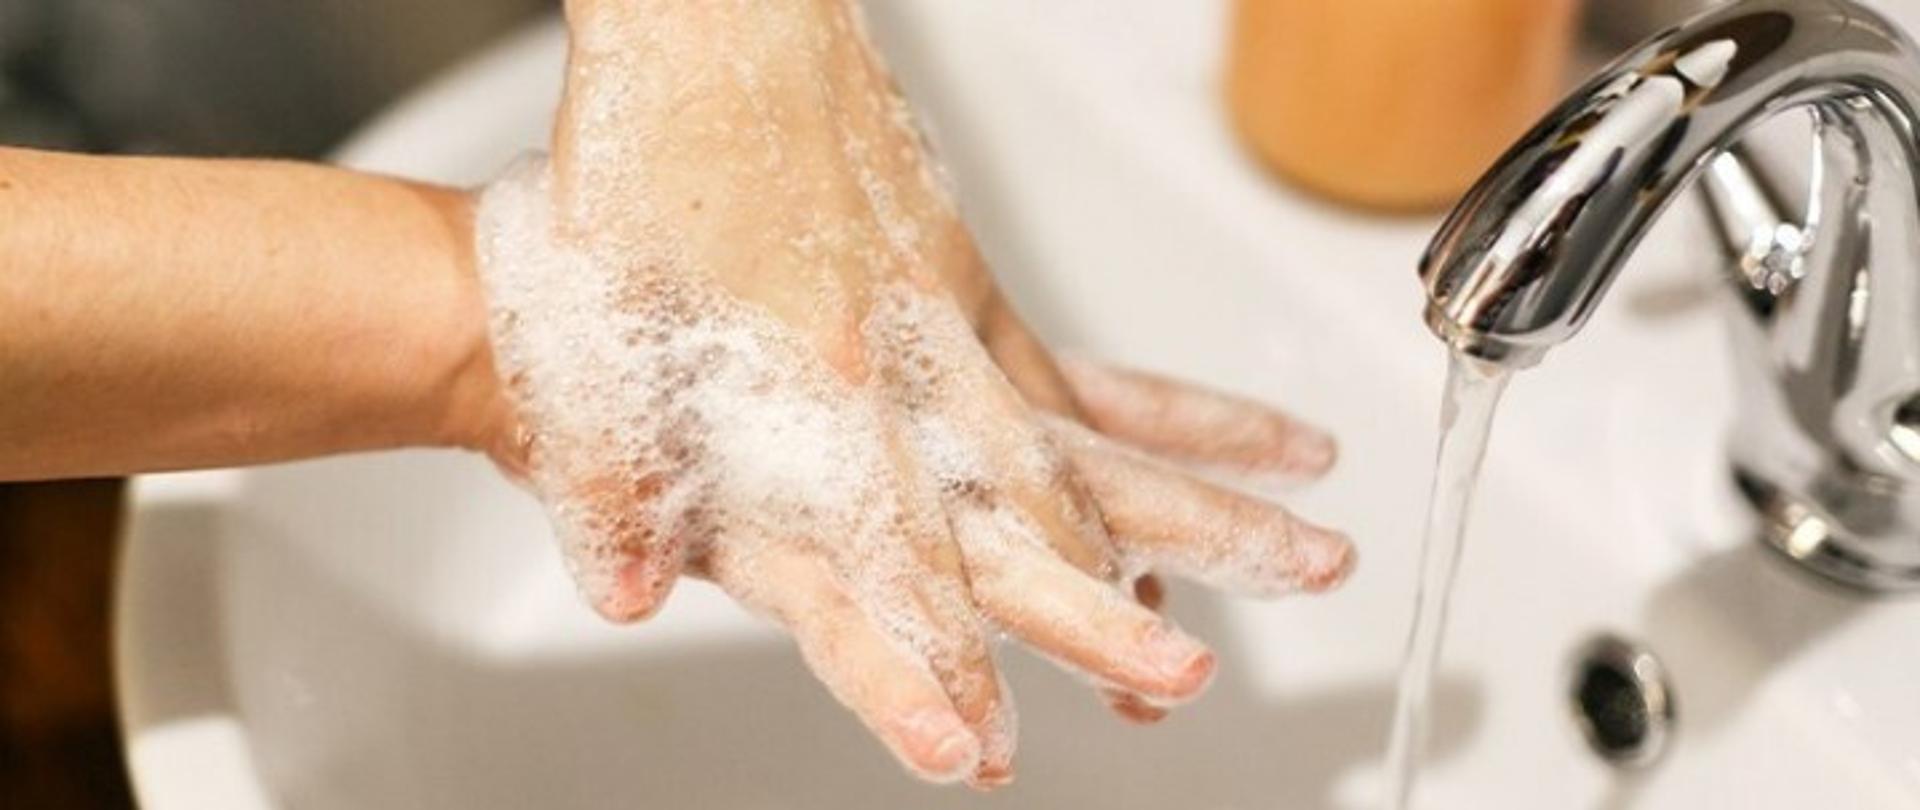 zdjęcie przestawiające mycie rąk, na głównym planie biała porcelanowa umywalka z srebrnym kranem, woda leci nieprzerwanym strumieniem. nad zlewem widoczne dłonie całe w pianie, jedna dłoń na drugiej, dłoń będąca na wierzchu myje przestrzenie między palcami dłoni pod nią.